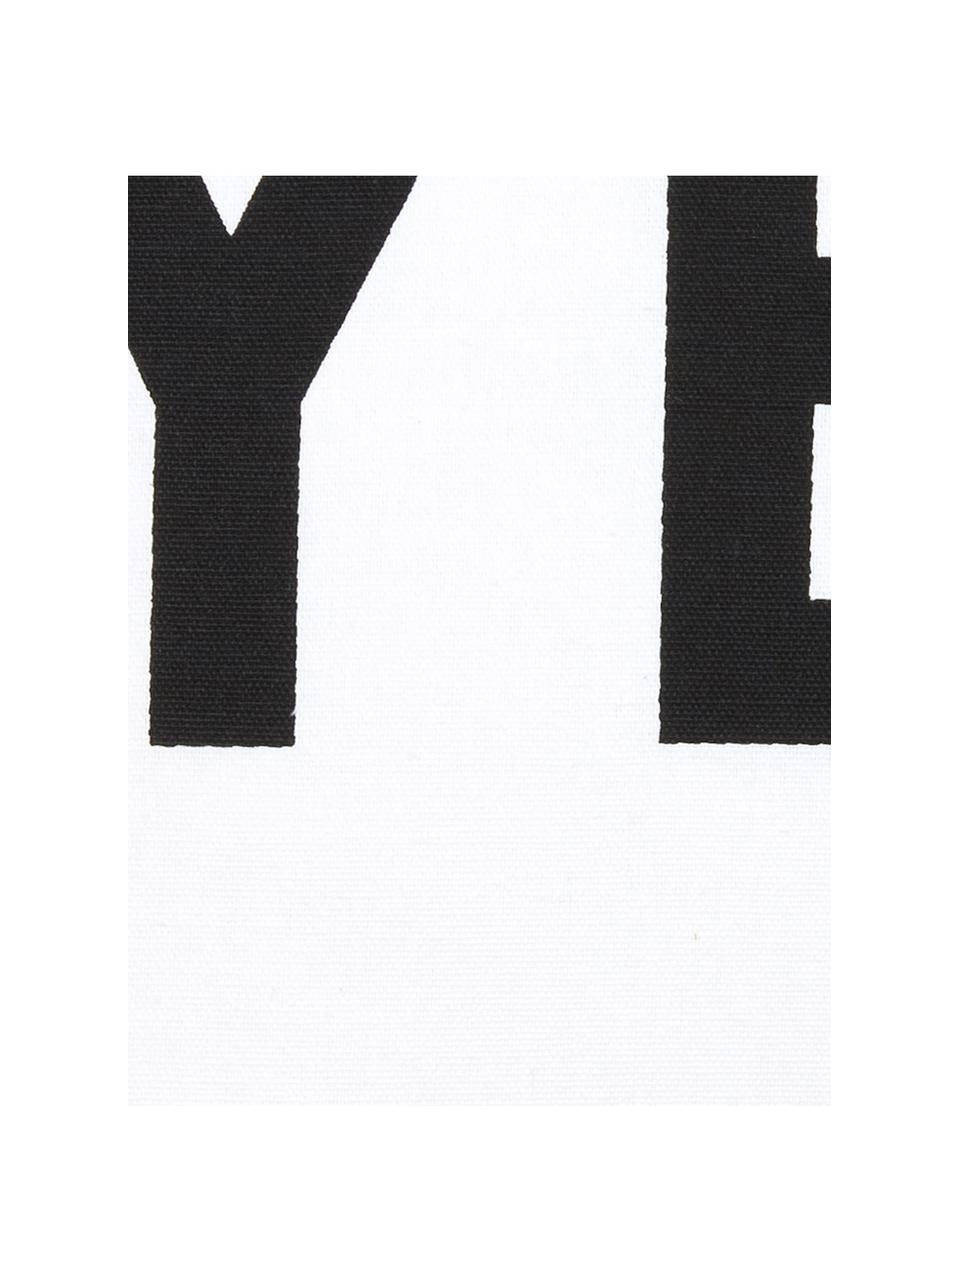 Kissen Decision mit Schriftzug, mit Inlett, Bezug: 100% Baumwolle, Schwarz, Weiss, 45 x 45 cm